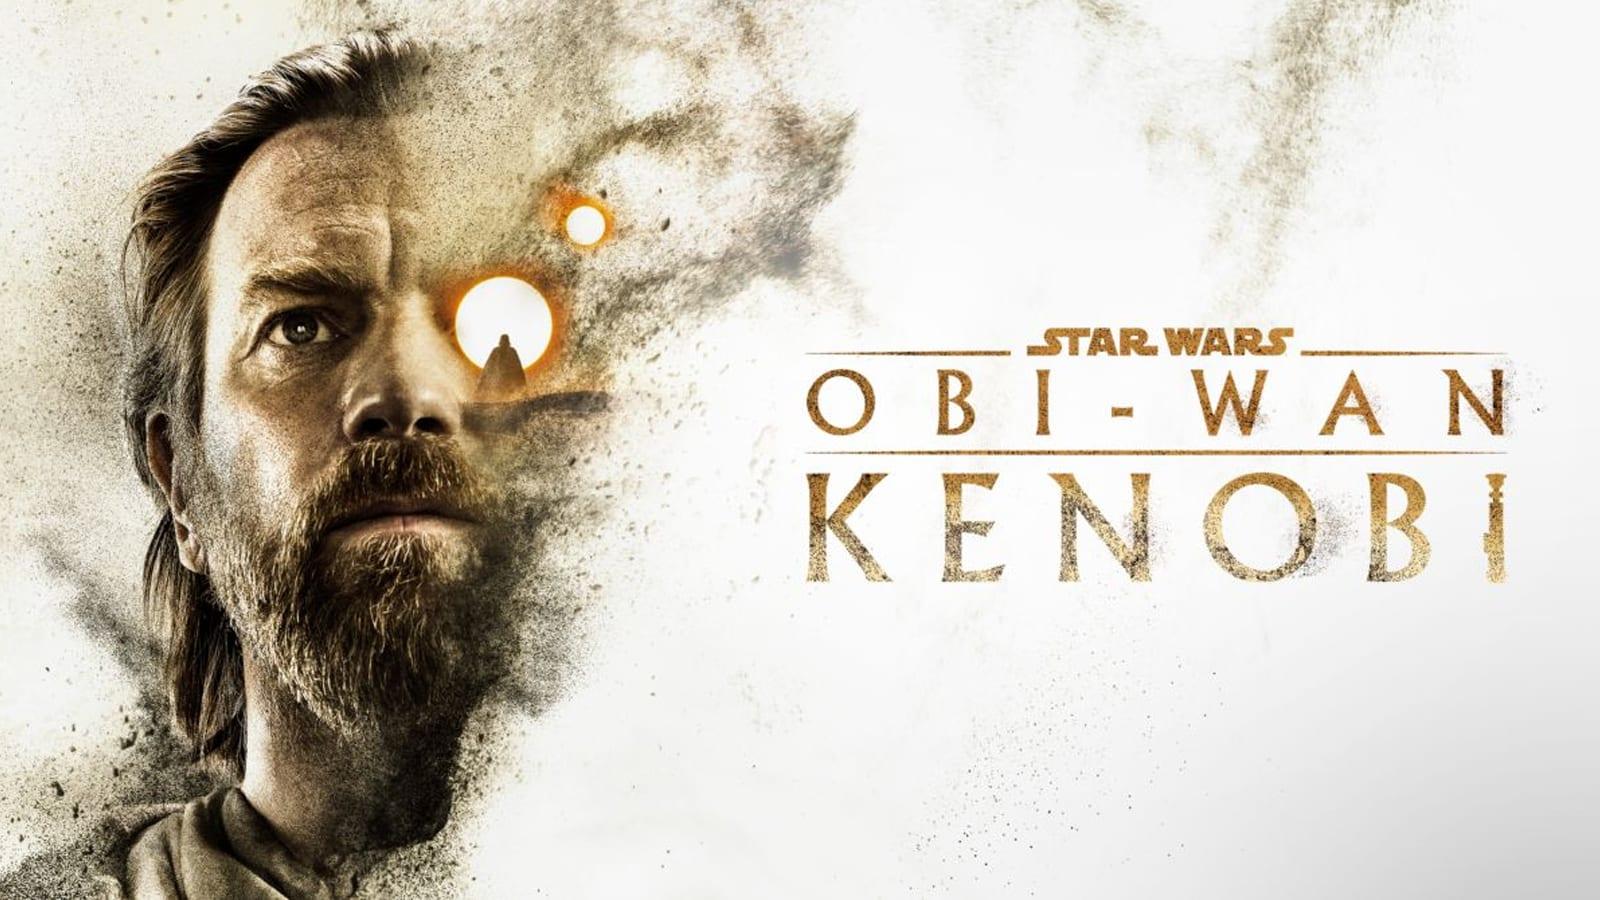 an image of obi-wan kenobi on disney+